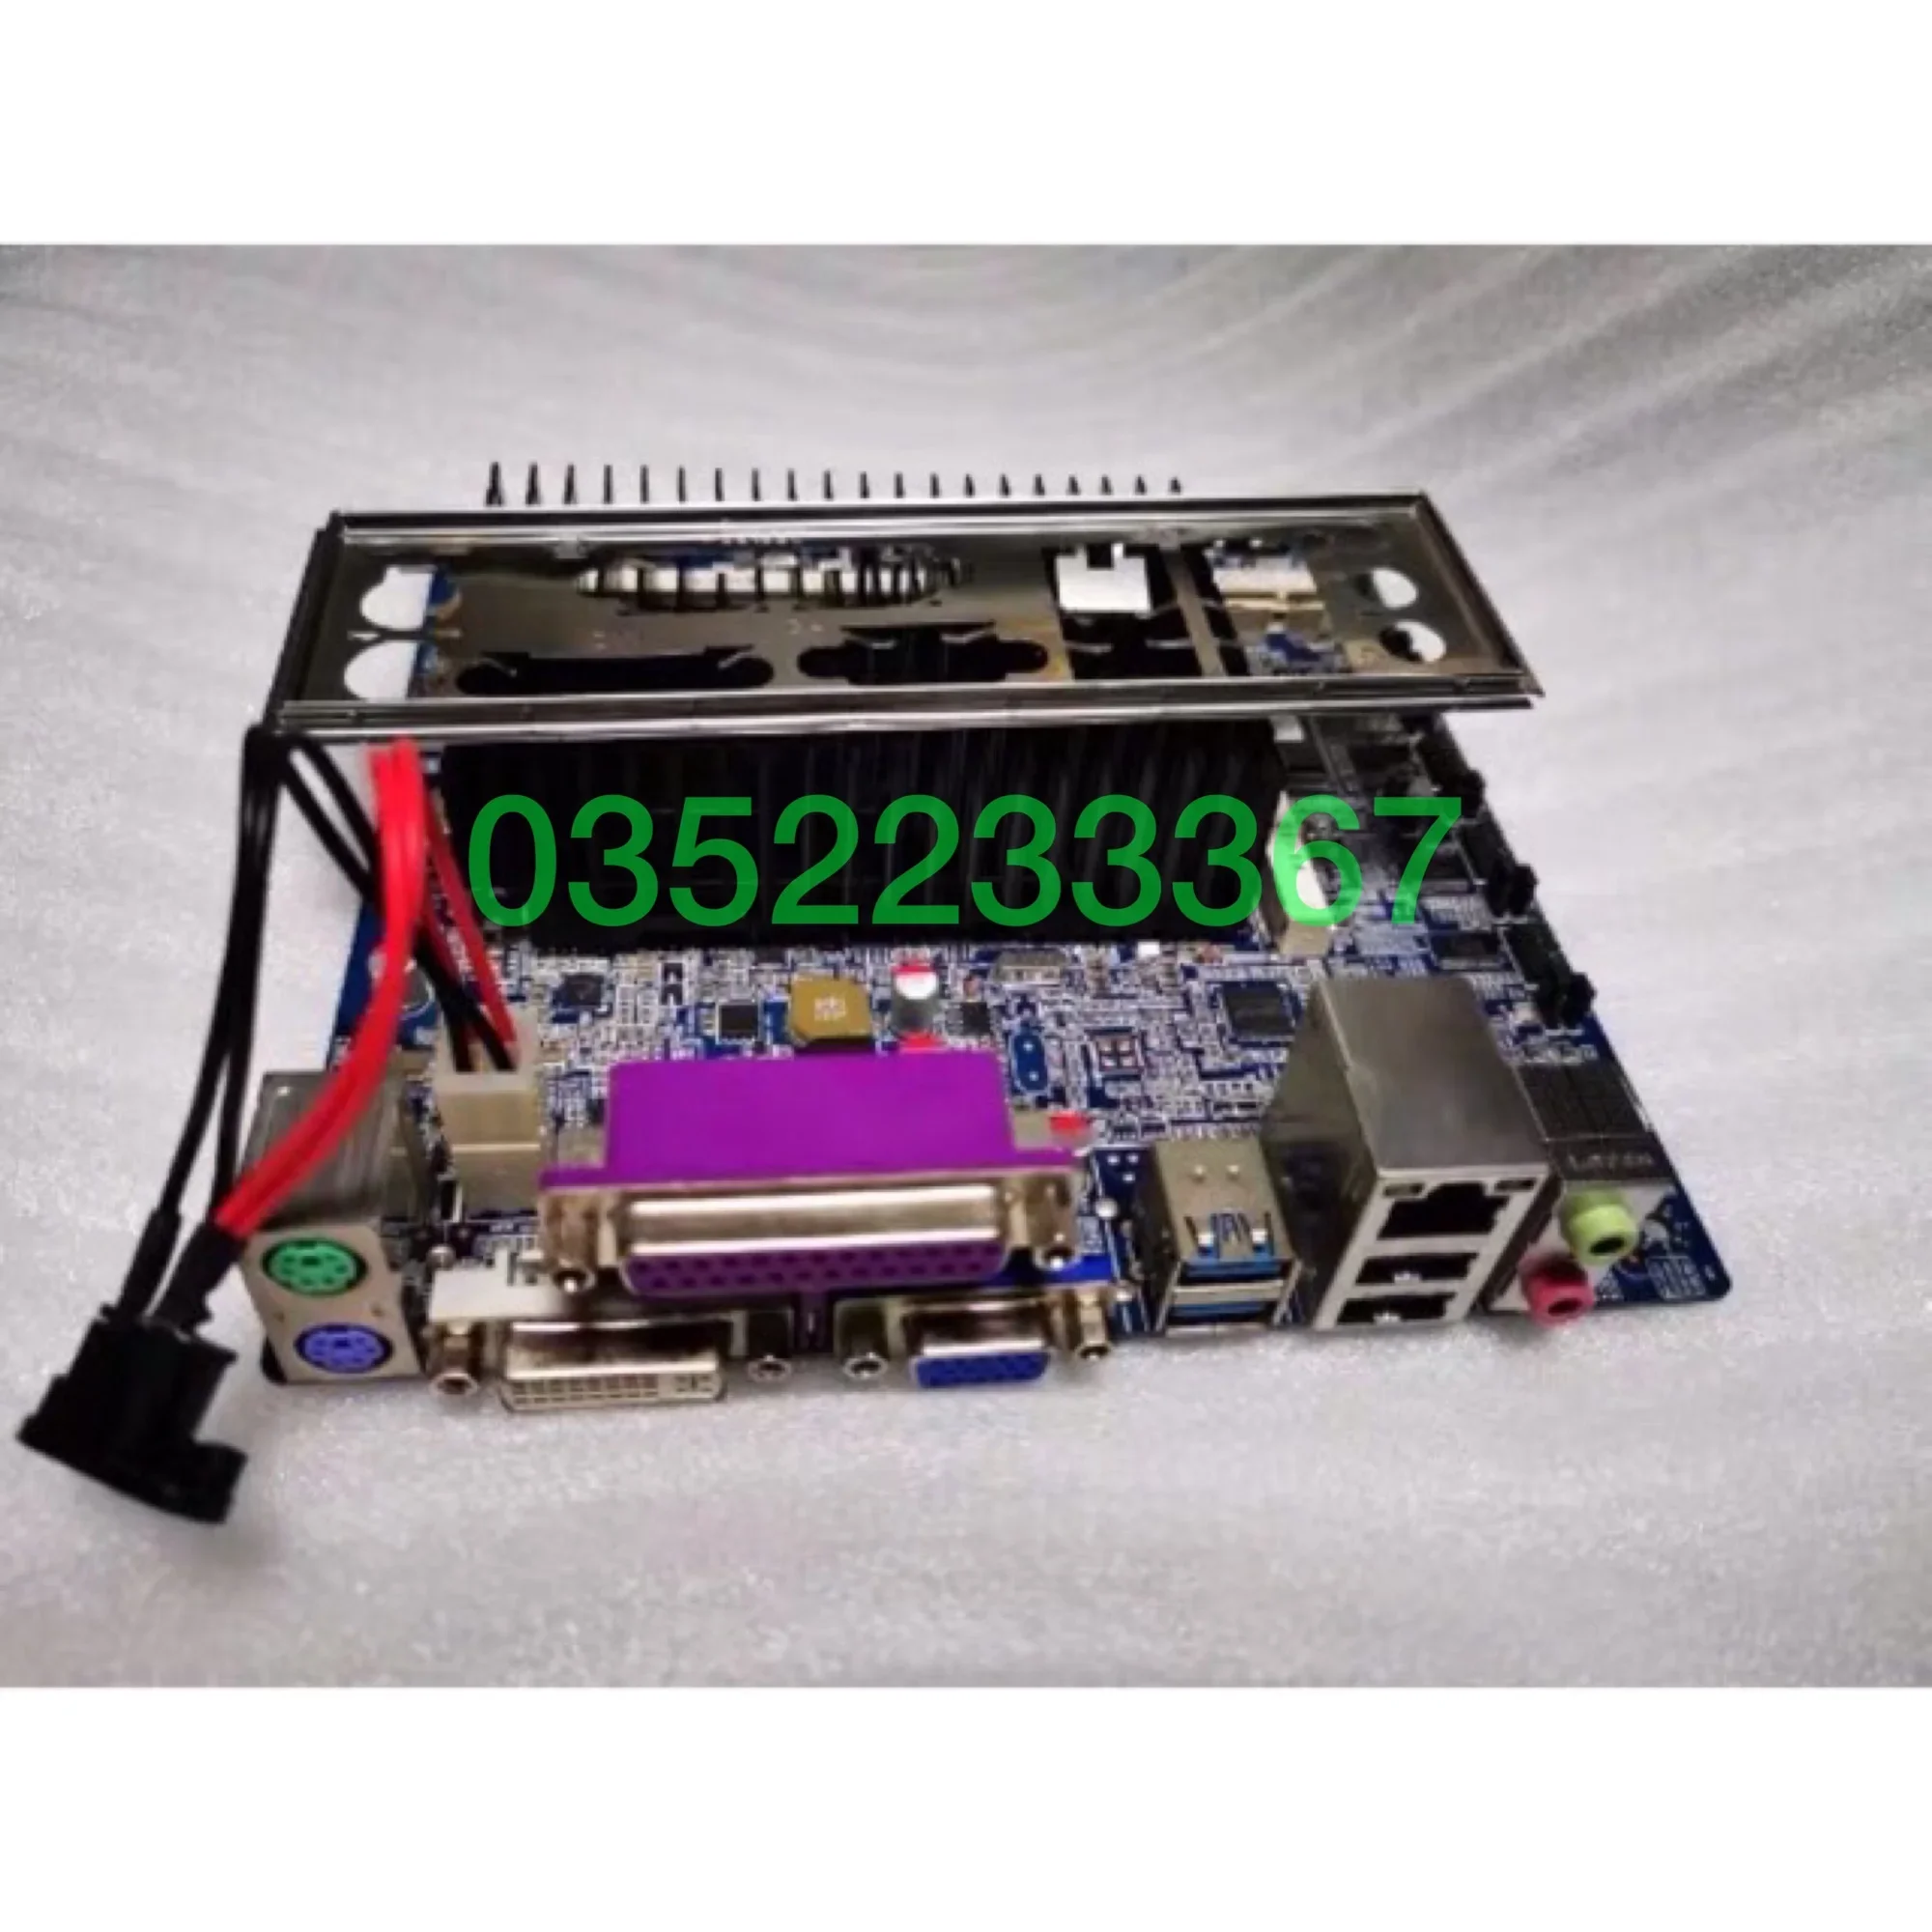 Main ITX, Audio 17*17cm, chíp dán D2550 1.86Ghz(siêu tiết kiệm điện) - K Ram - K SSD